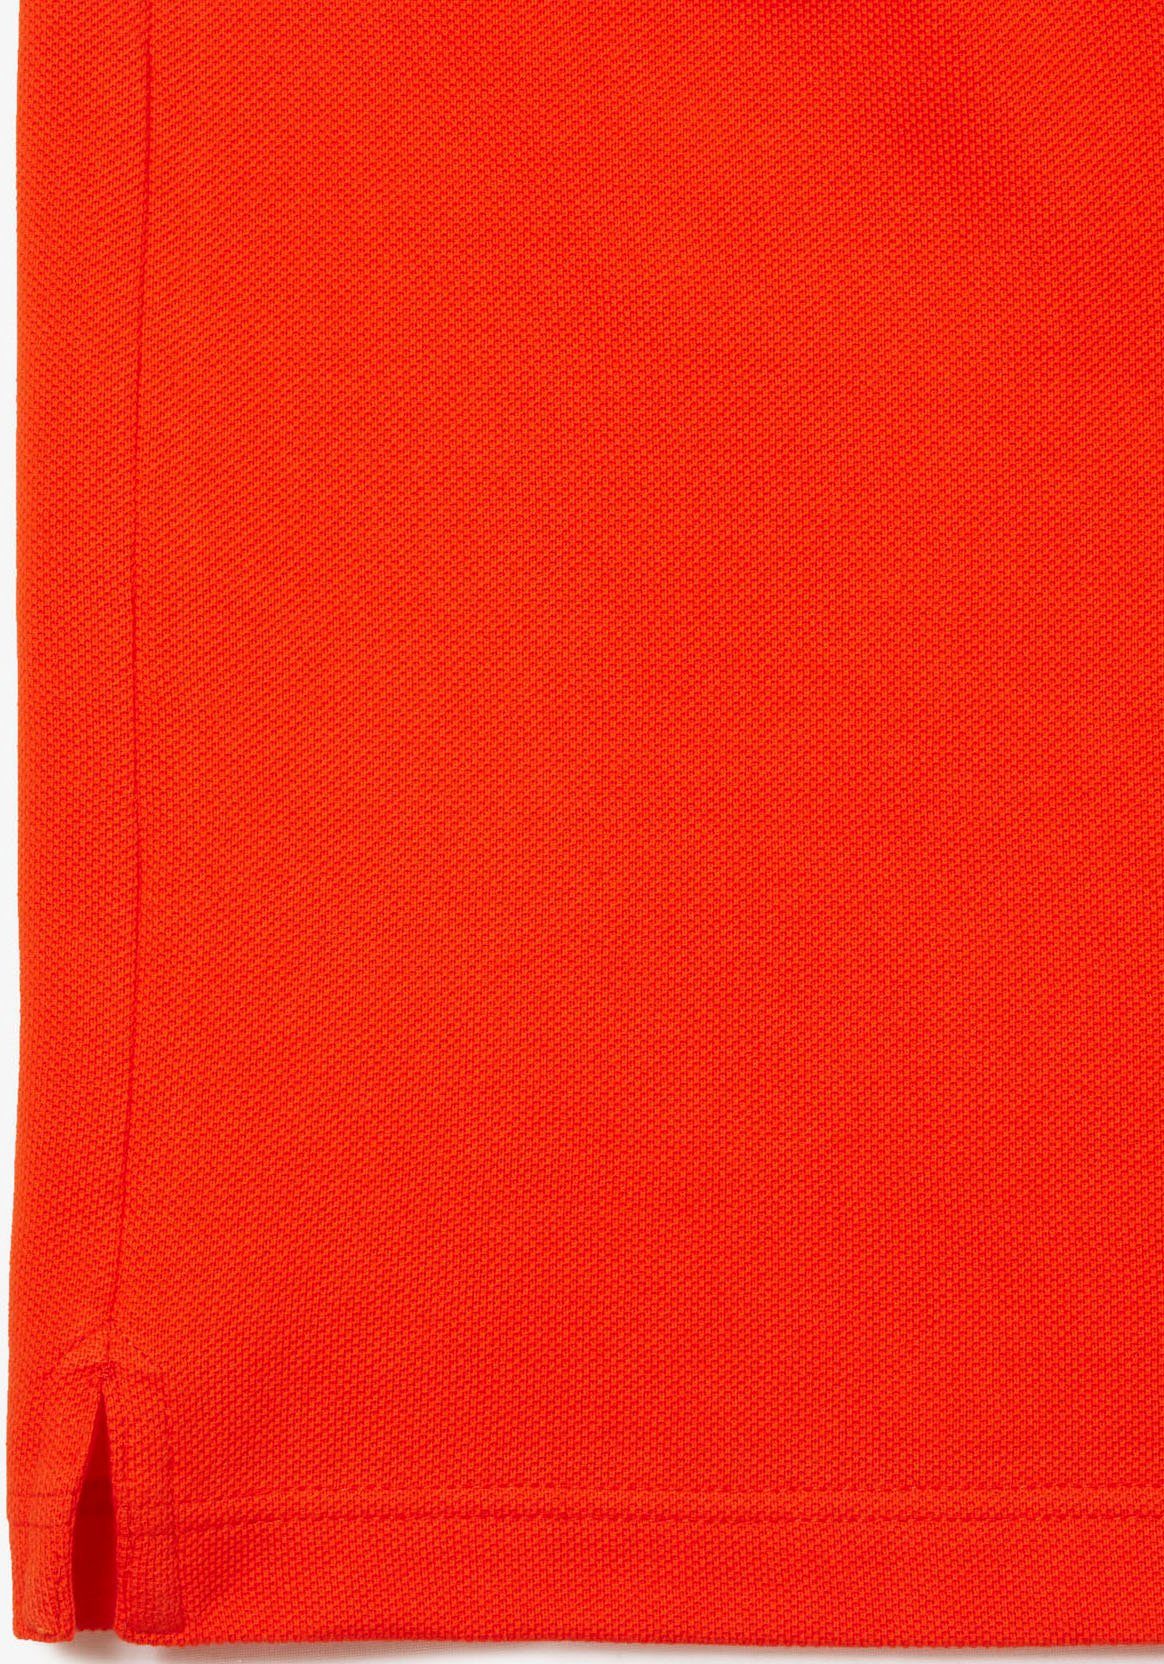 Logostickerei orange mit Lacoste Poloshirt (1-tlg)